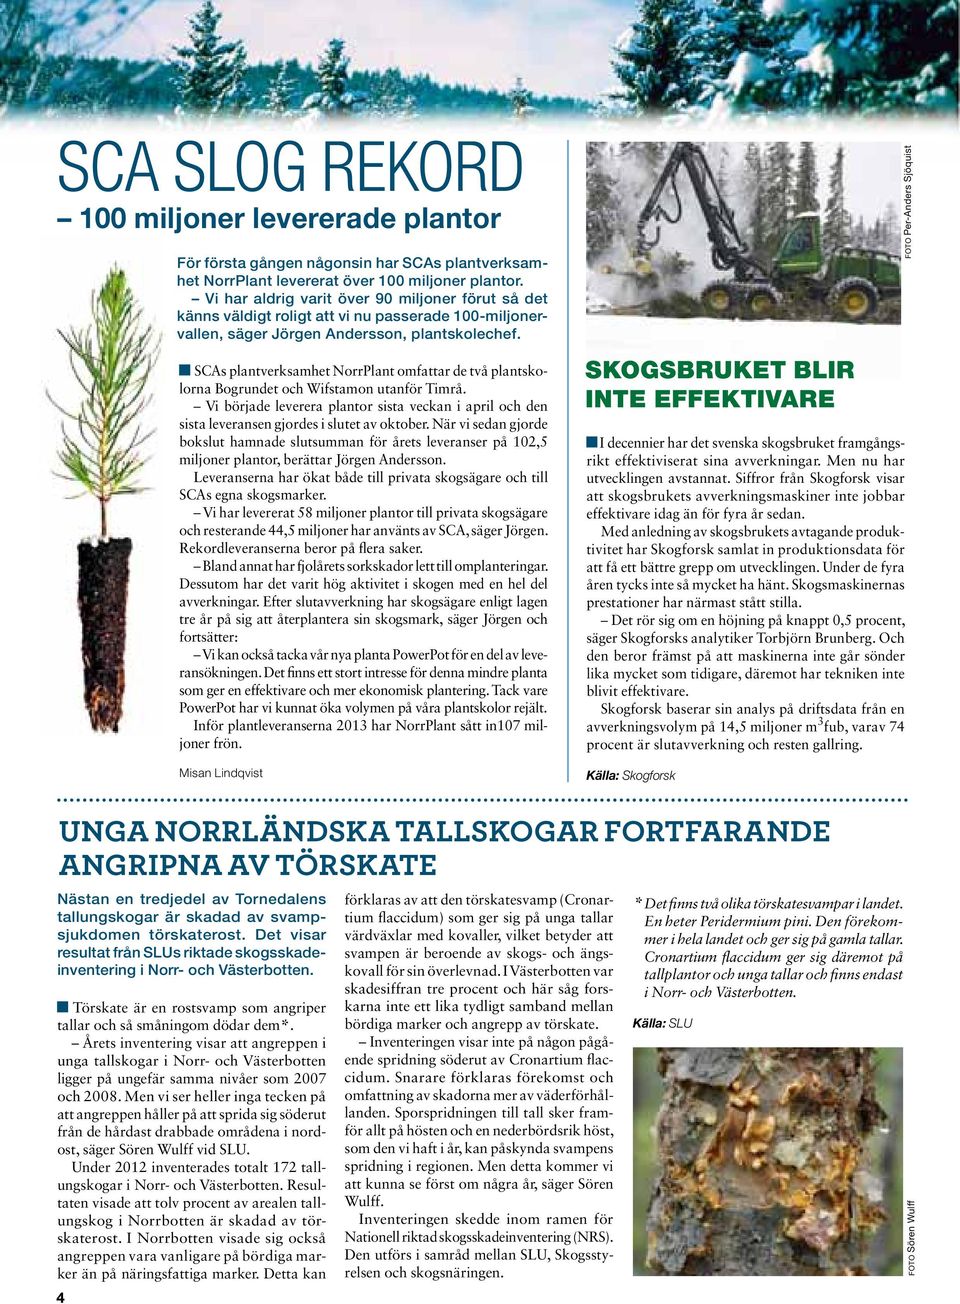 SCAs plantverksamhet NorrPlant omfattar de två plantskolorna Bogrundet och Wifstamon utanför Timrå.